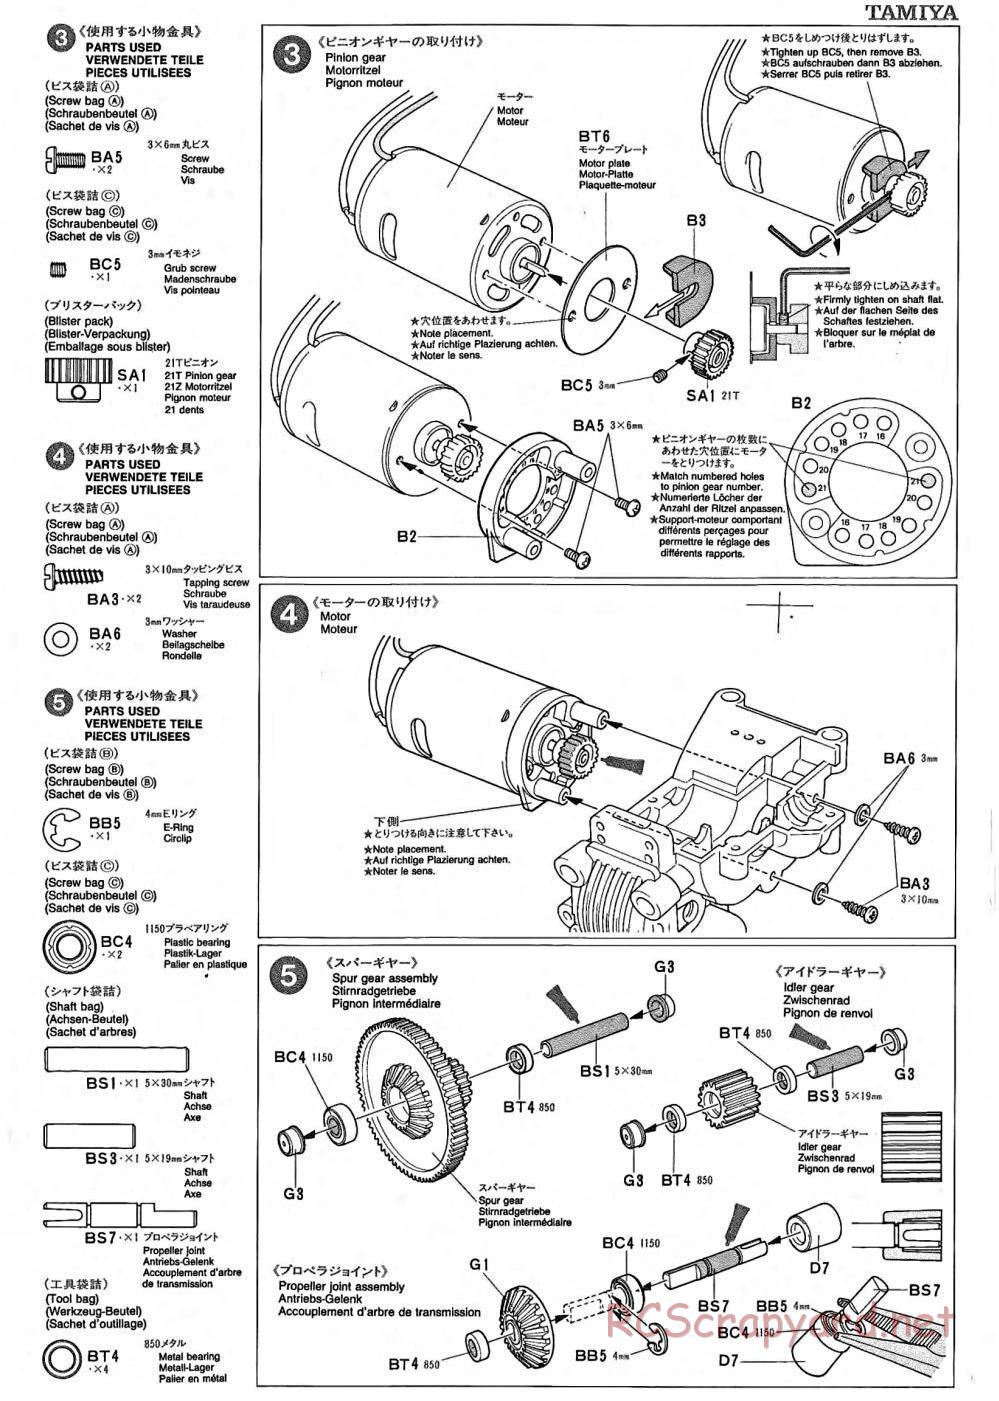 Tamiya - TA-02 Chassis - Manual - Page 2